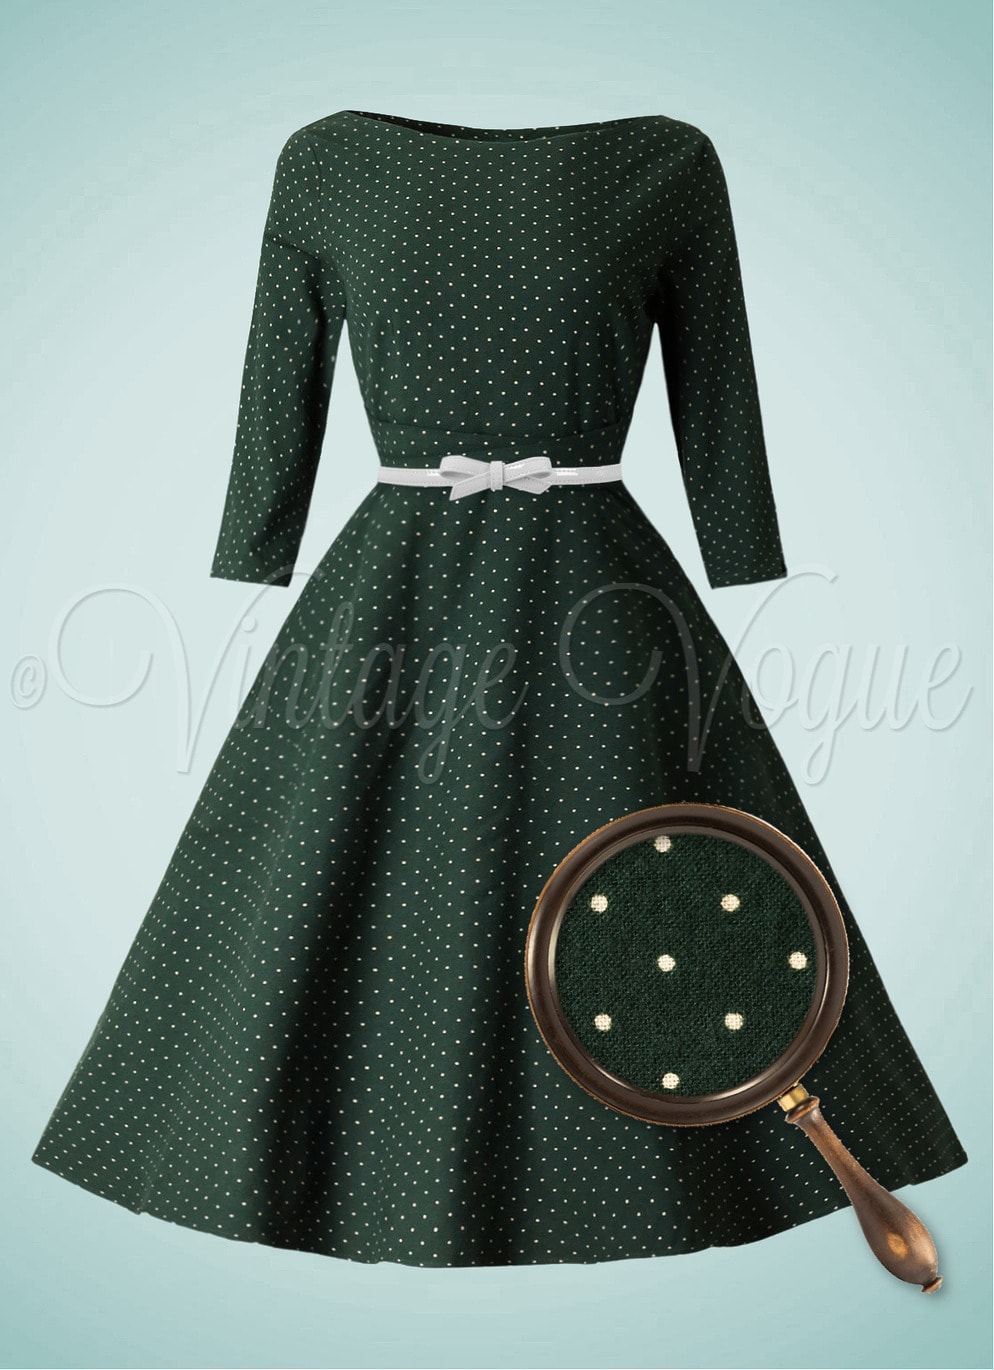 Banned Retro 50's Vintage Polka Punkte Swing Winter Kleid Cosy Spot Dress in Grün 50er Jahre Petticoat Langarm Damenkleid Punkte Polka Dots gepunktet tupfen